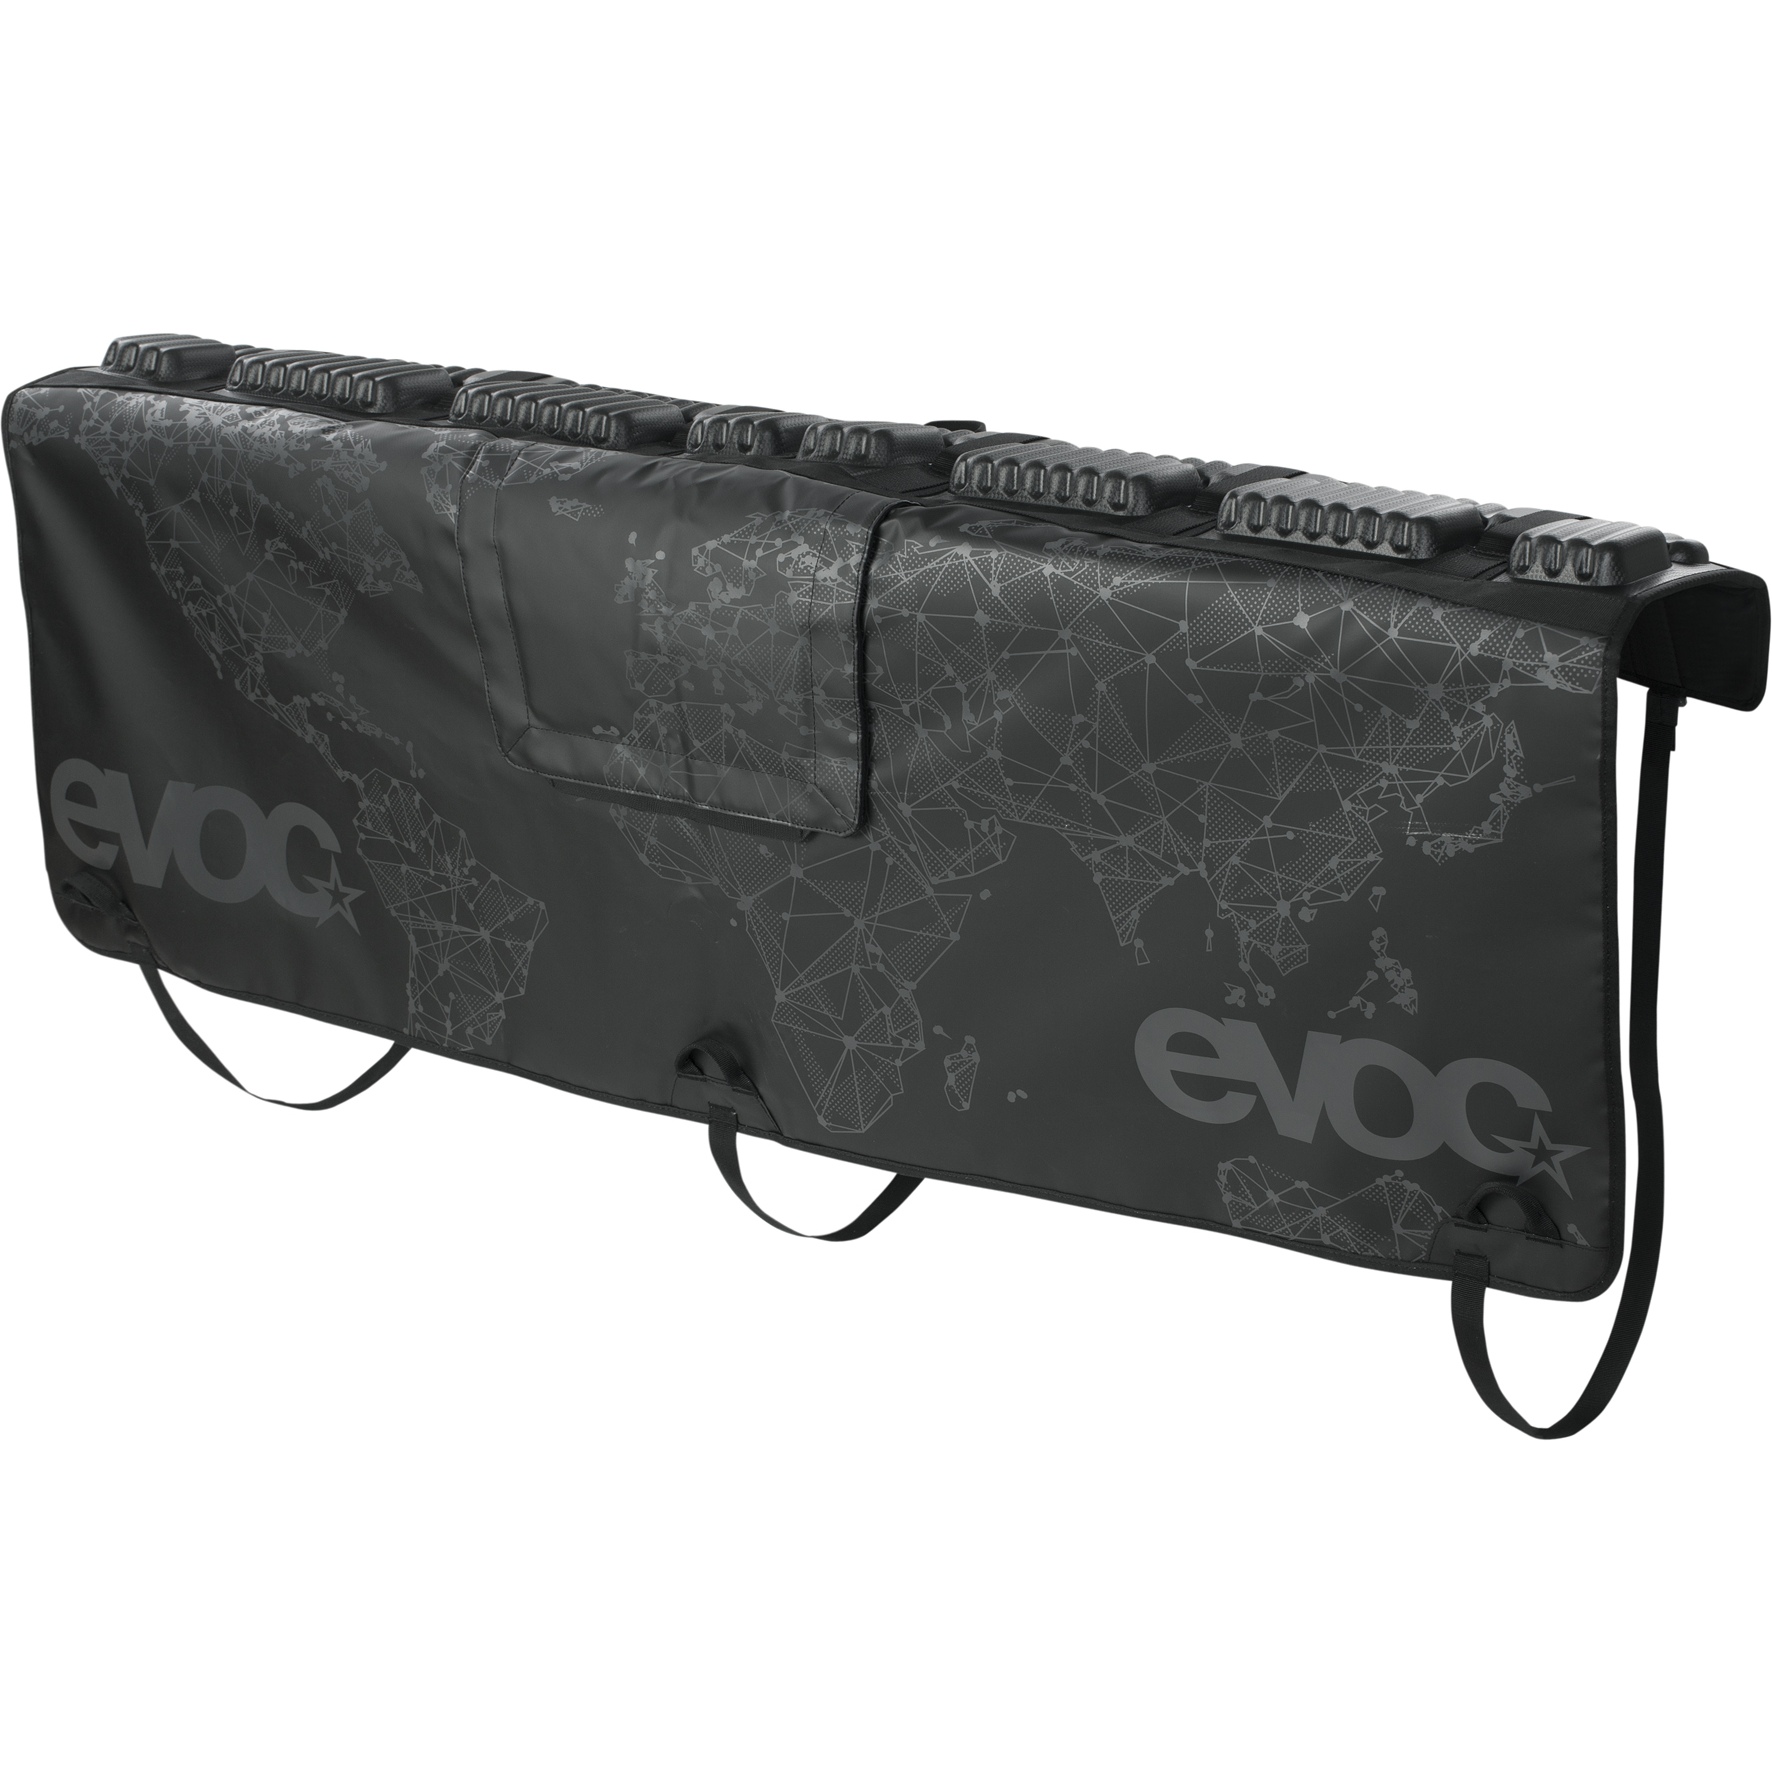 Produktbild von EVOC Tailgate Pad Curve - Heckklappen-Schutz - Größe XL - Schwarz